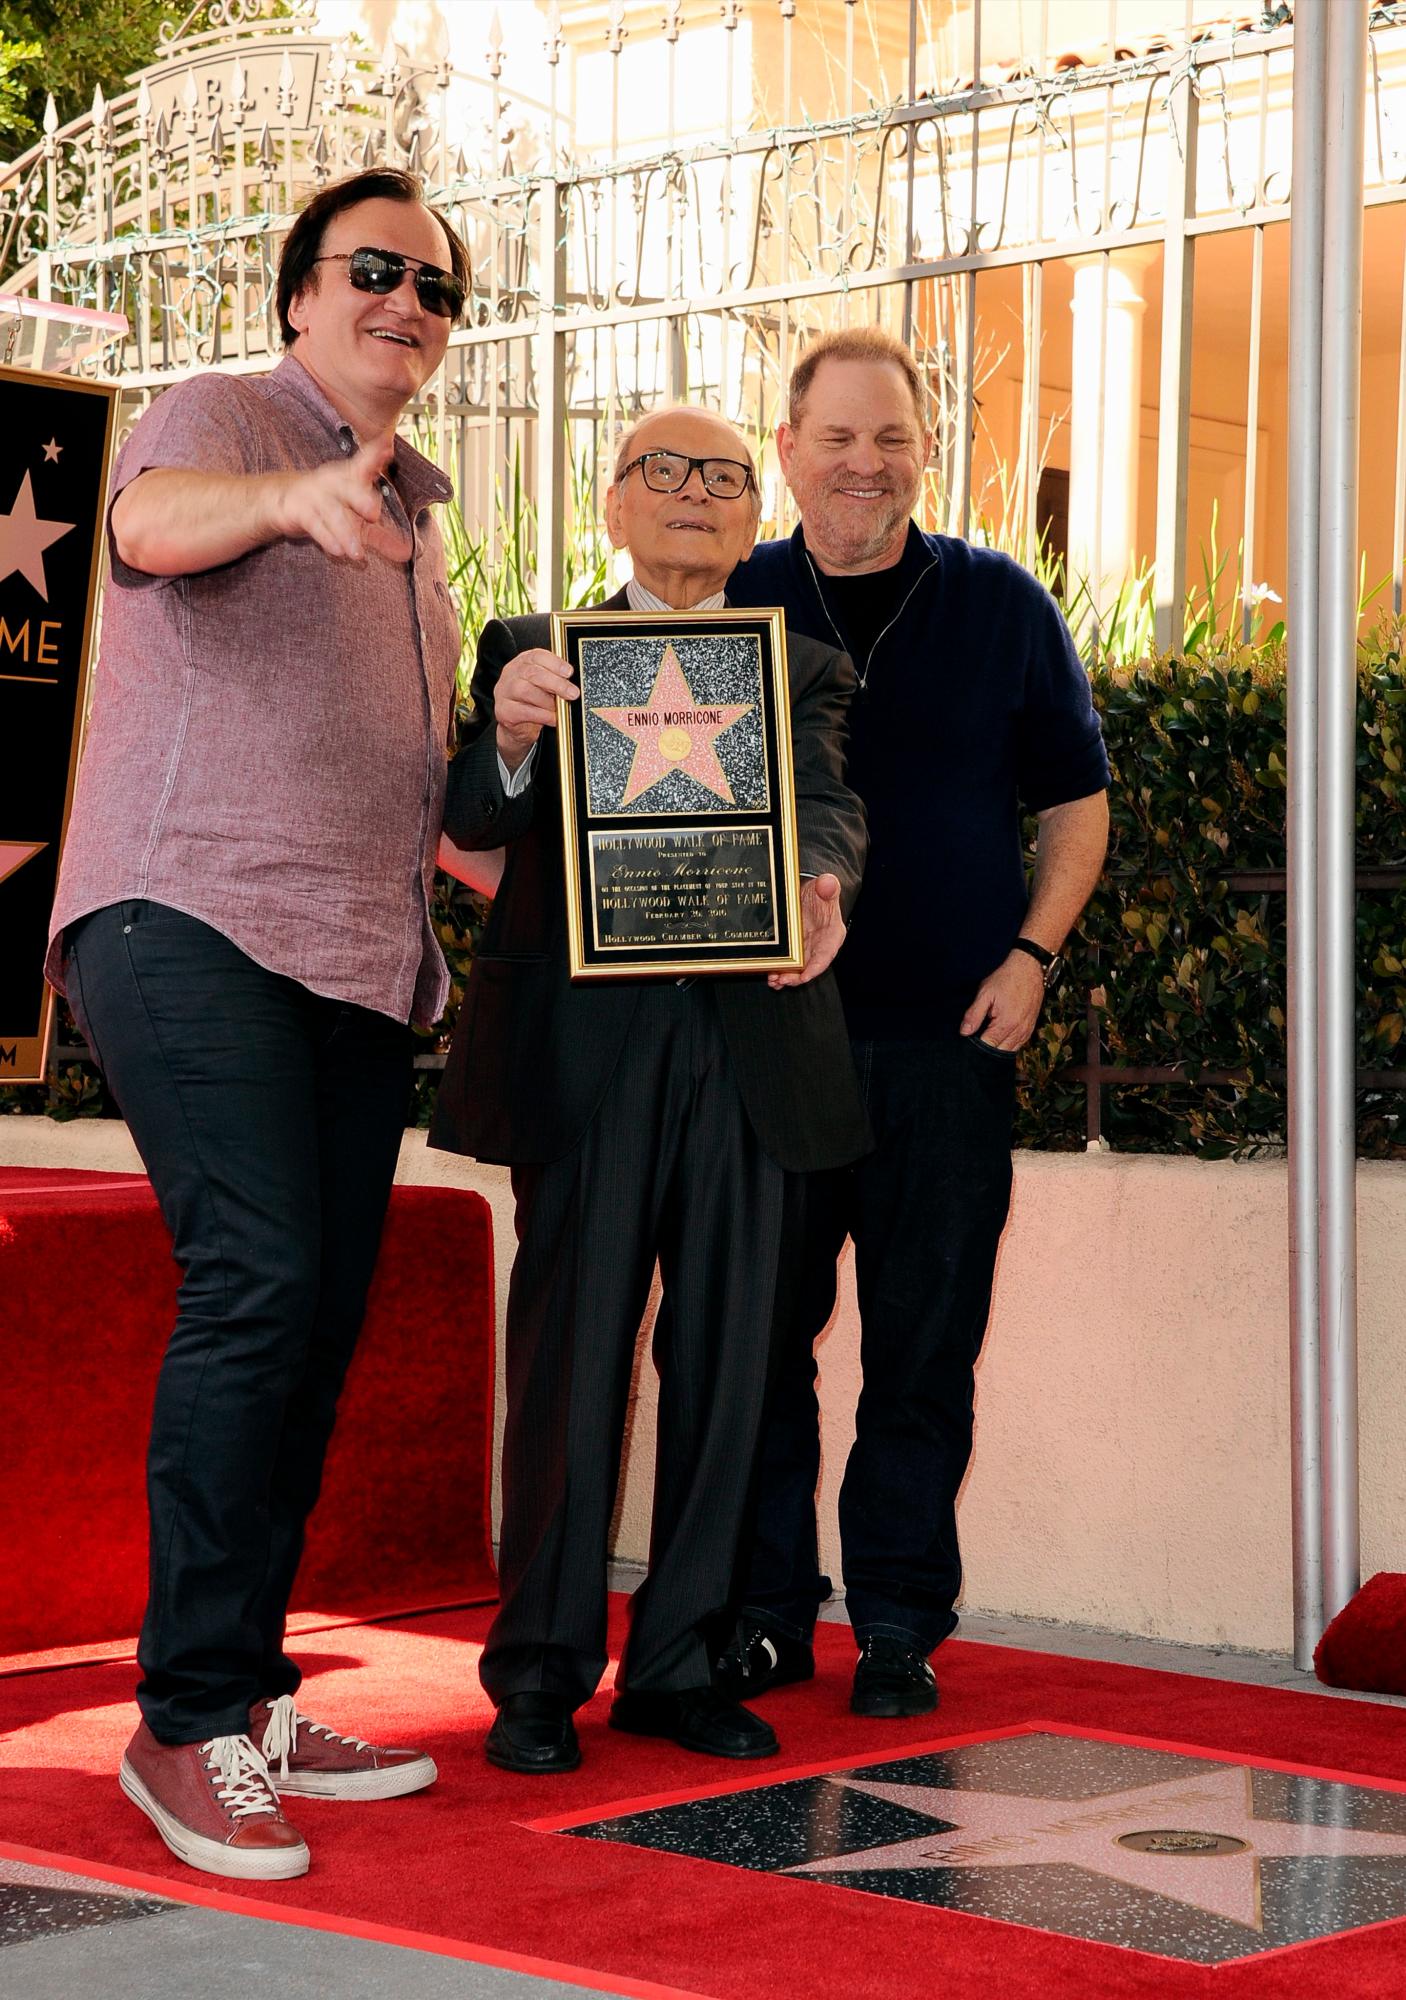 El director estadounidense Quentin Tarantino (L) y el productor estadounidense Harvey Weinstein (R) posan con el compositor italiano Ennio Morricone (C) durante una ceremonia en Hollywood, California, EE. UU., el 26 de febrero de 2016 Morricone recibió la estrella 2.574 en el Paseo de la Fama en la categoría de Actuación en vivo/teatro.